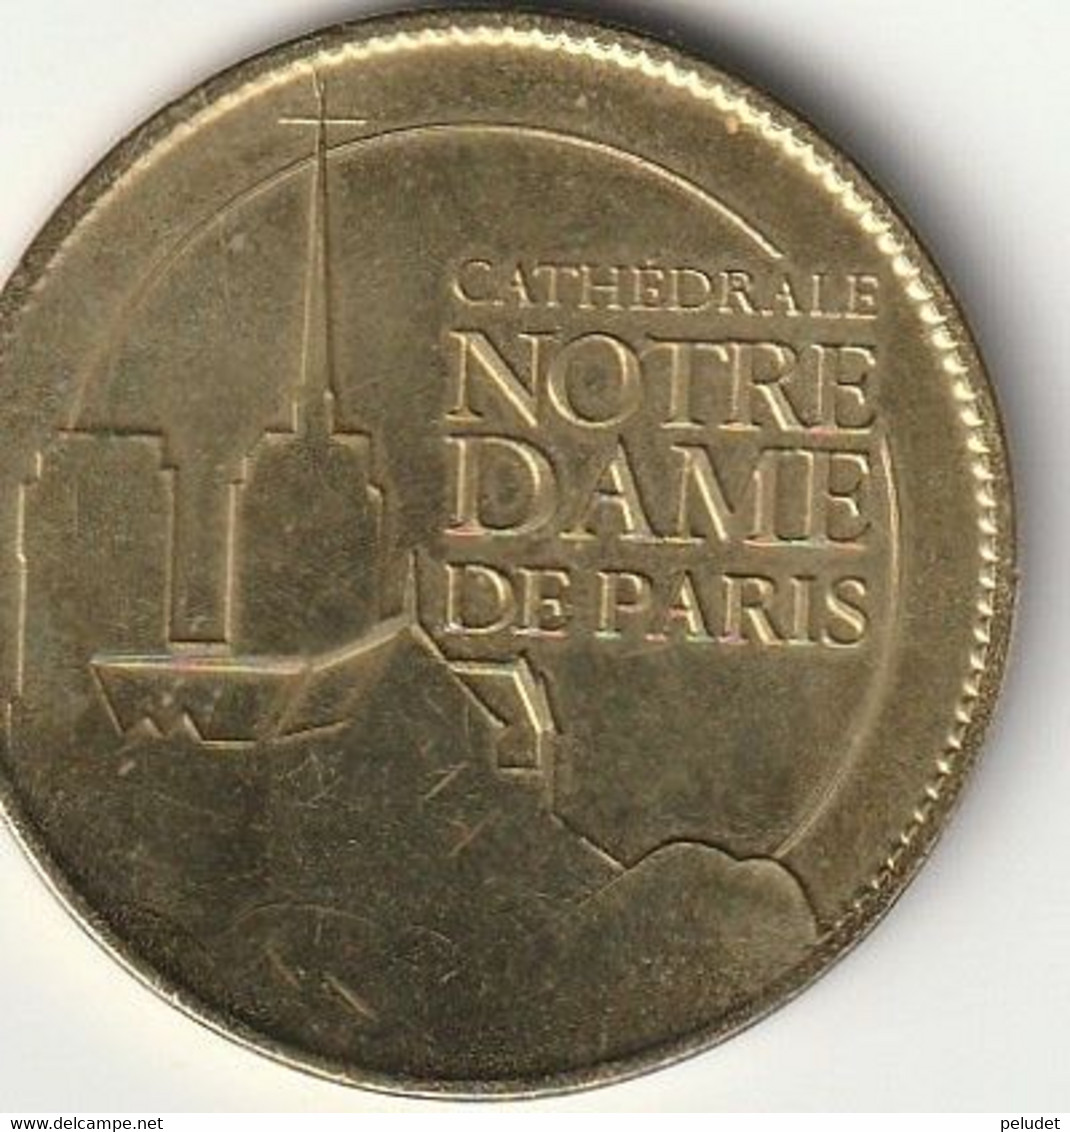 Cathedrale Notre Dame De Paris, Médaille Souvenir (jeton Touristique) Monnaie De Paris Arthus Bertrand - Sin Fecha